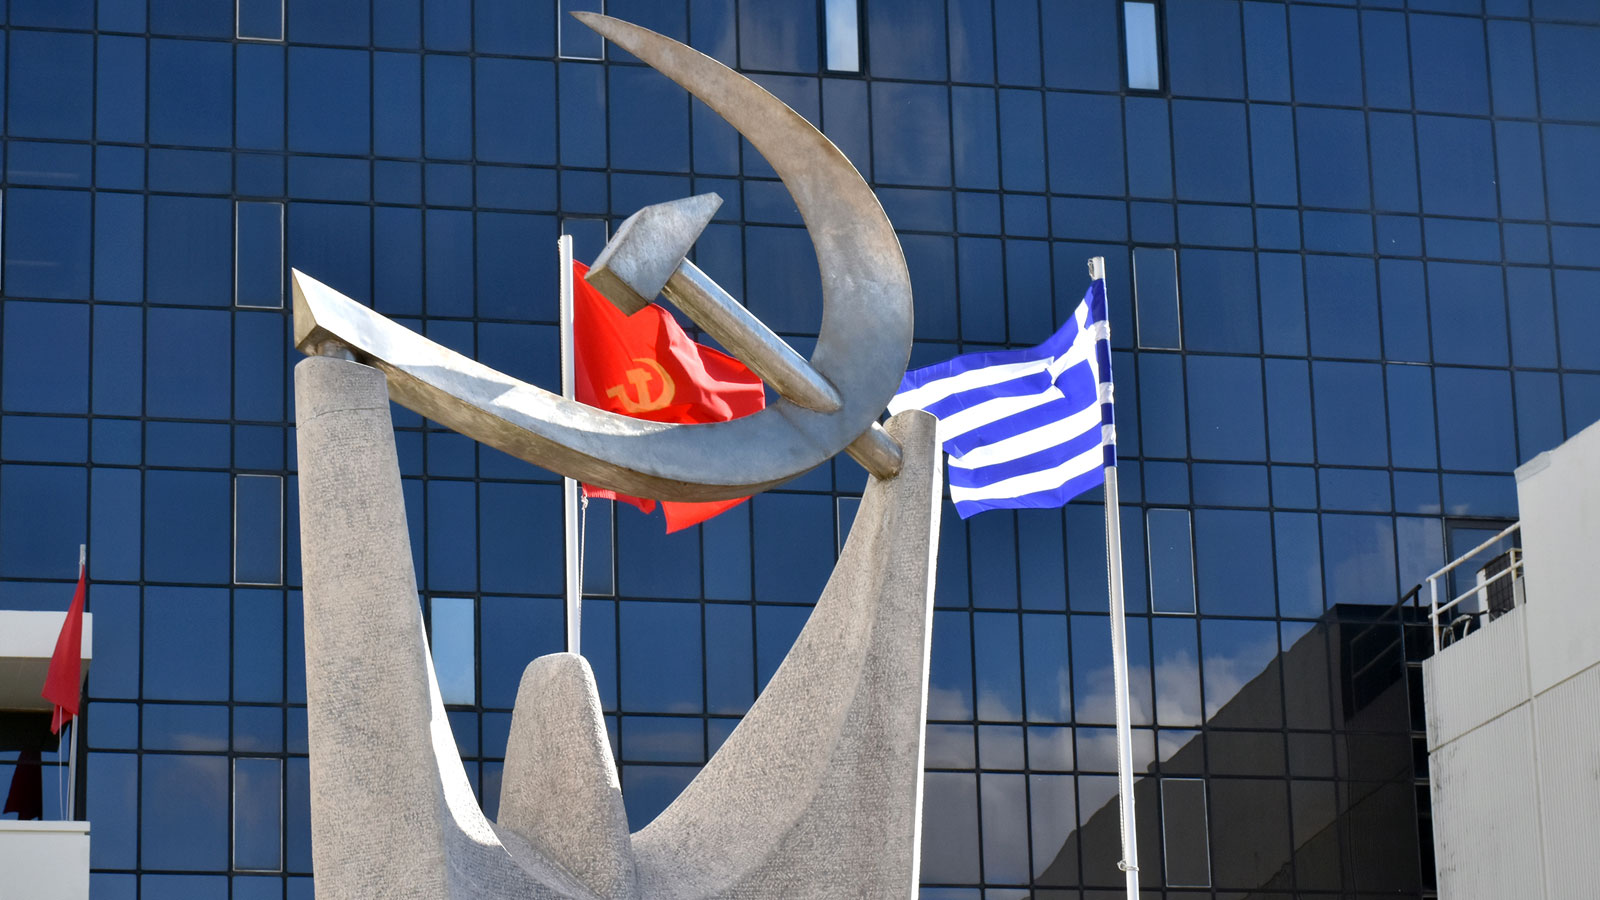 «Διχαστική» η αντιπαράθεση ΝΔ, ΣΥΡΙΖΑ και ΠΑΣΟΚ για τη Ροδόπη, λένε οι μειονοτικοί υποψήφιοι του ΚΚΕ